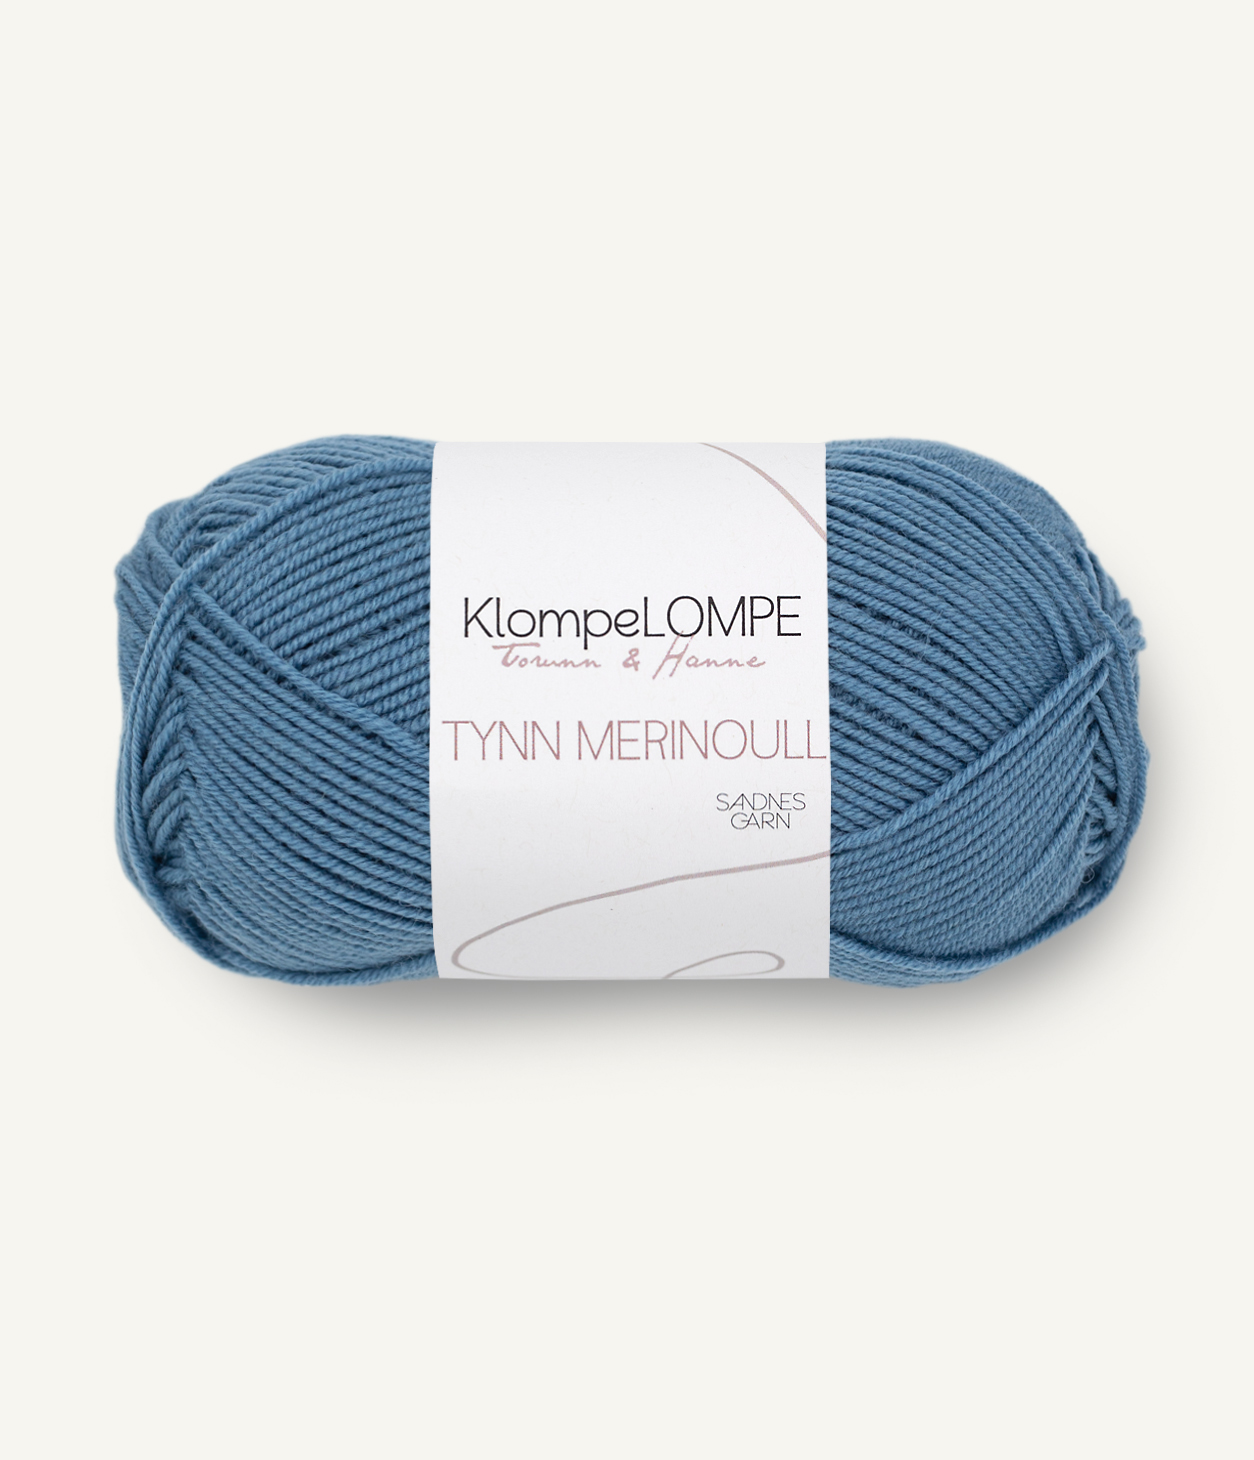 KL Tynn Merinoull 6033 Jeansblå